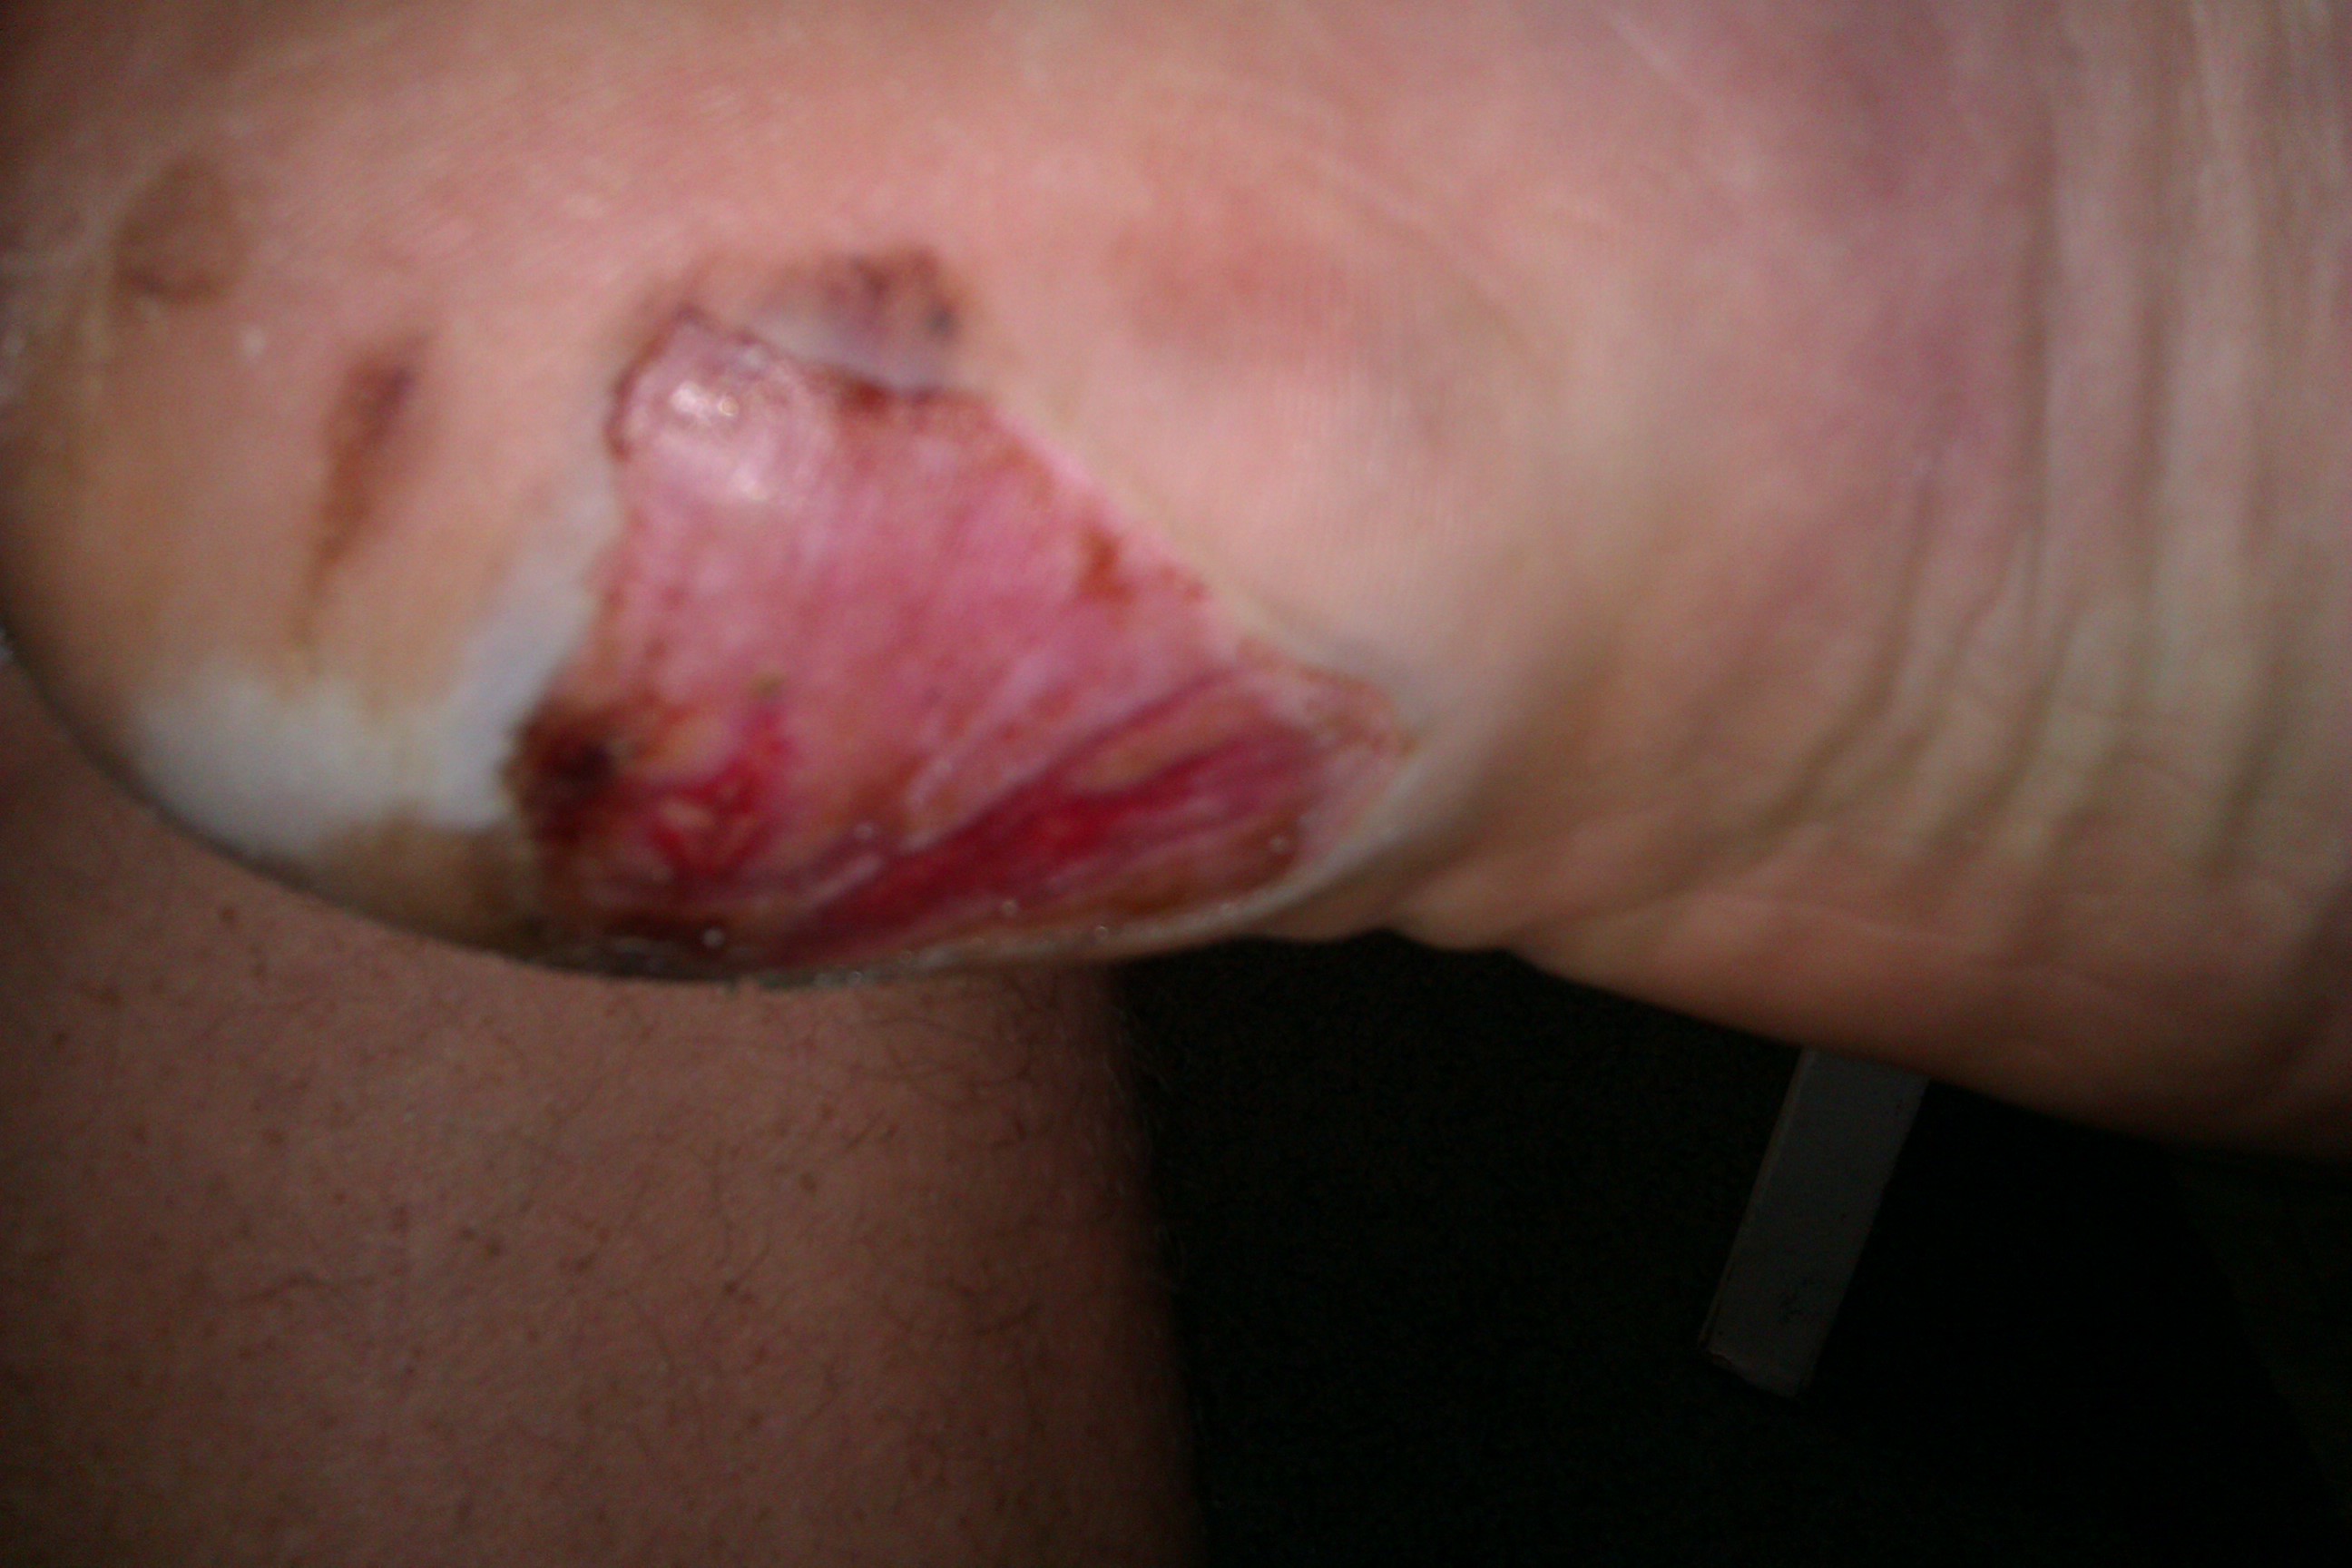 foot injury healing